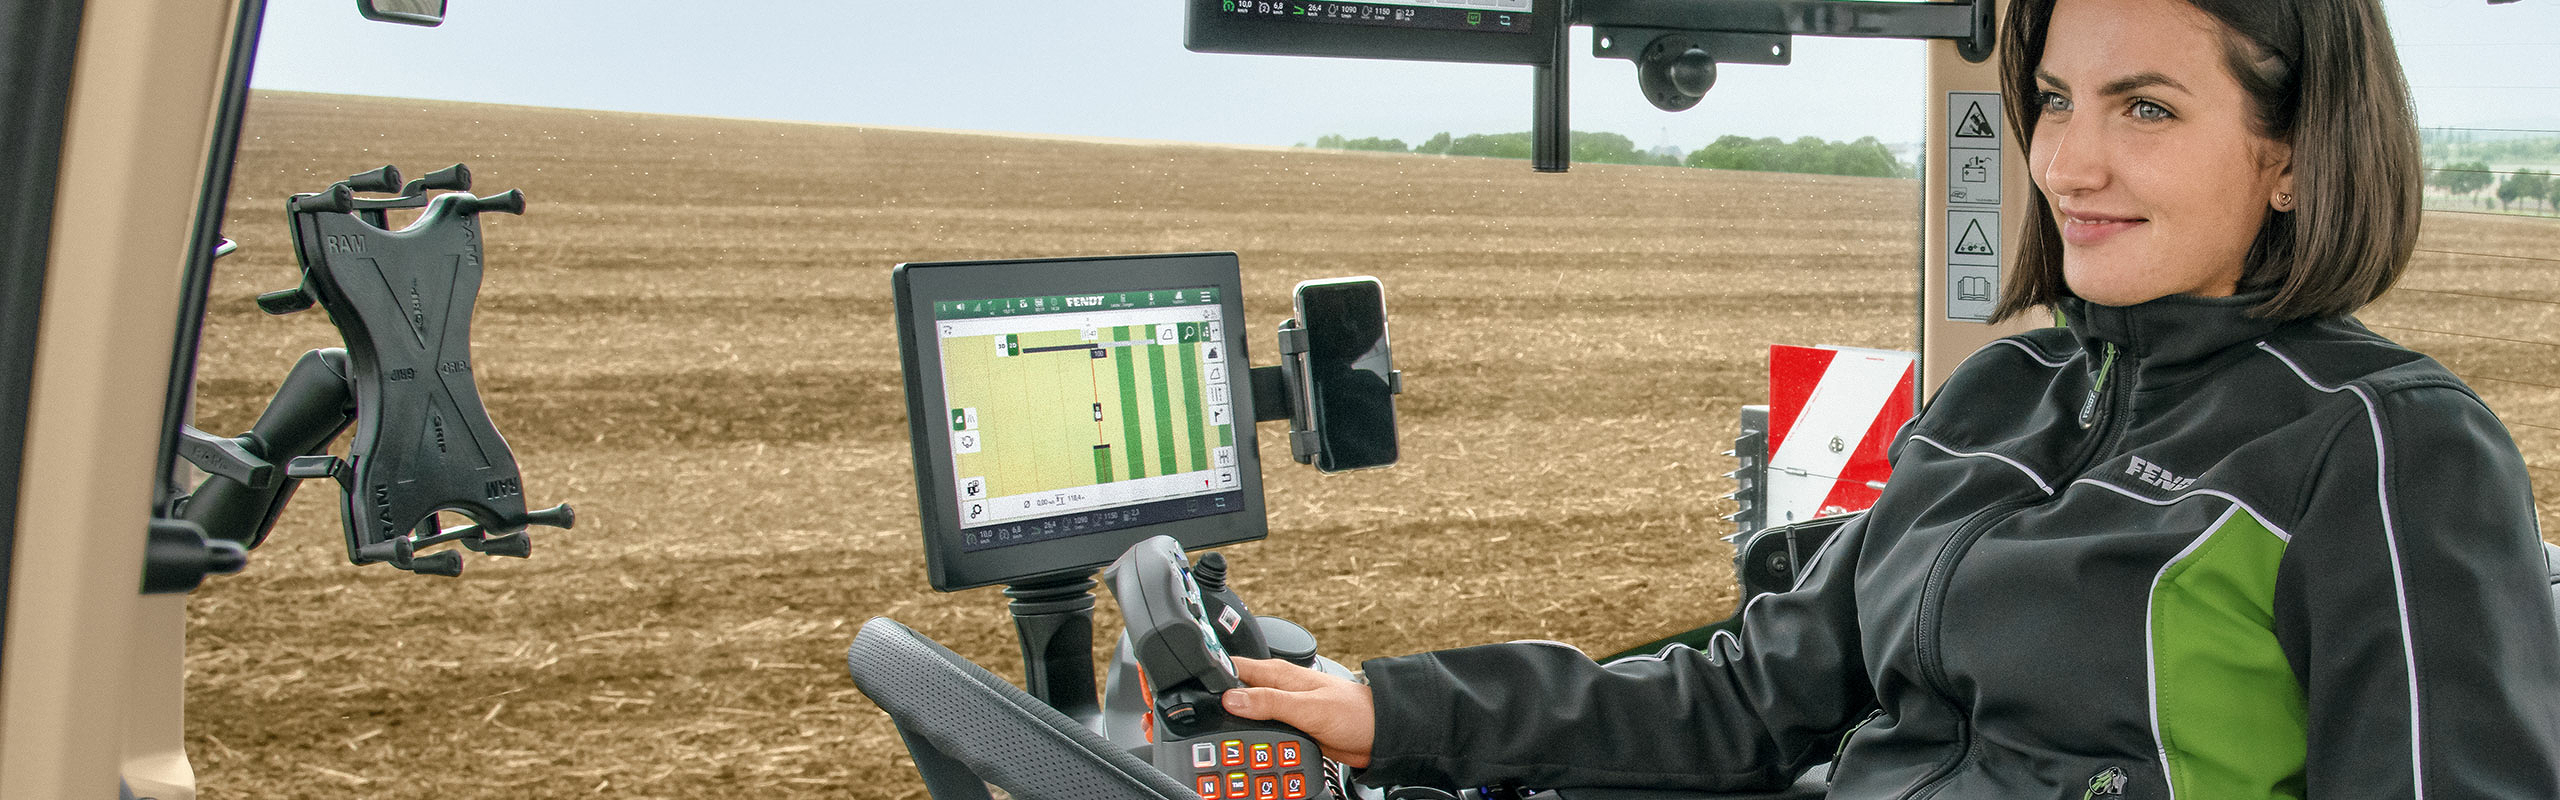 FendtONE: Digital Farming trifft moderne Landtechnik